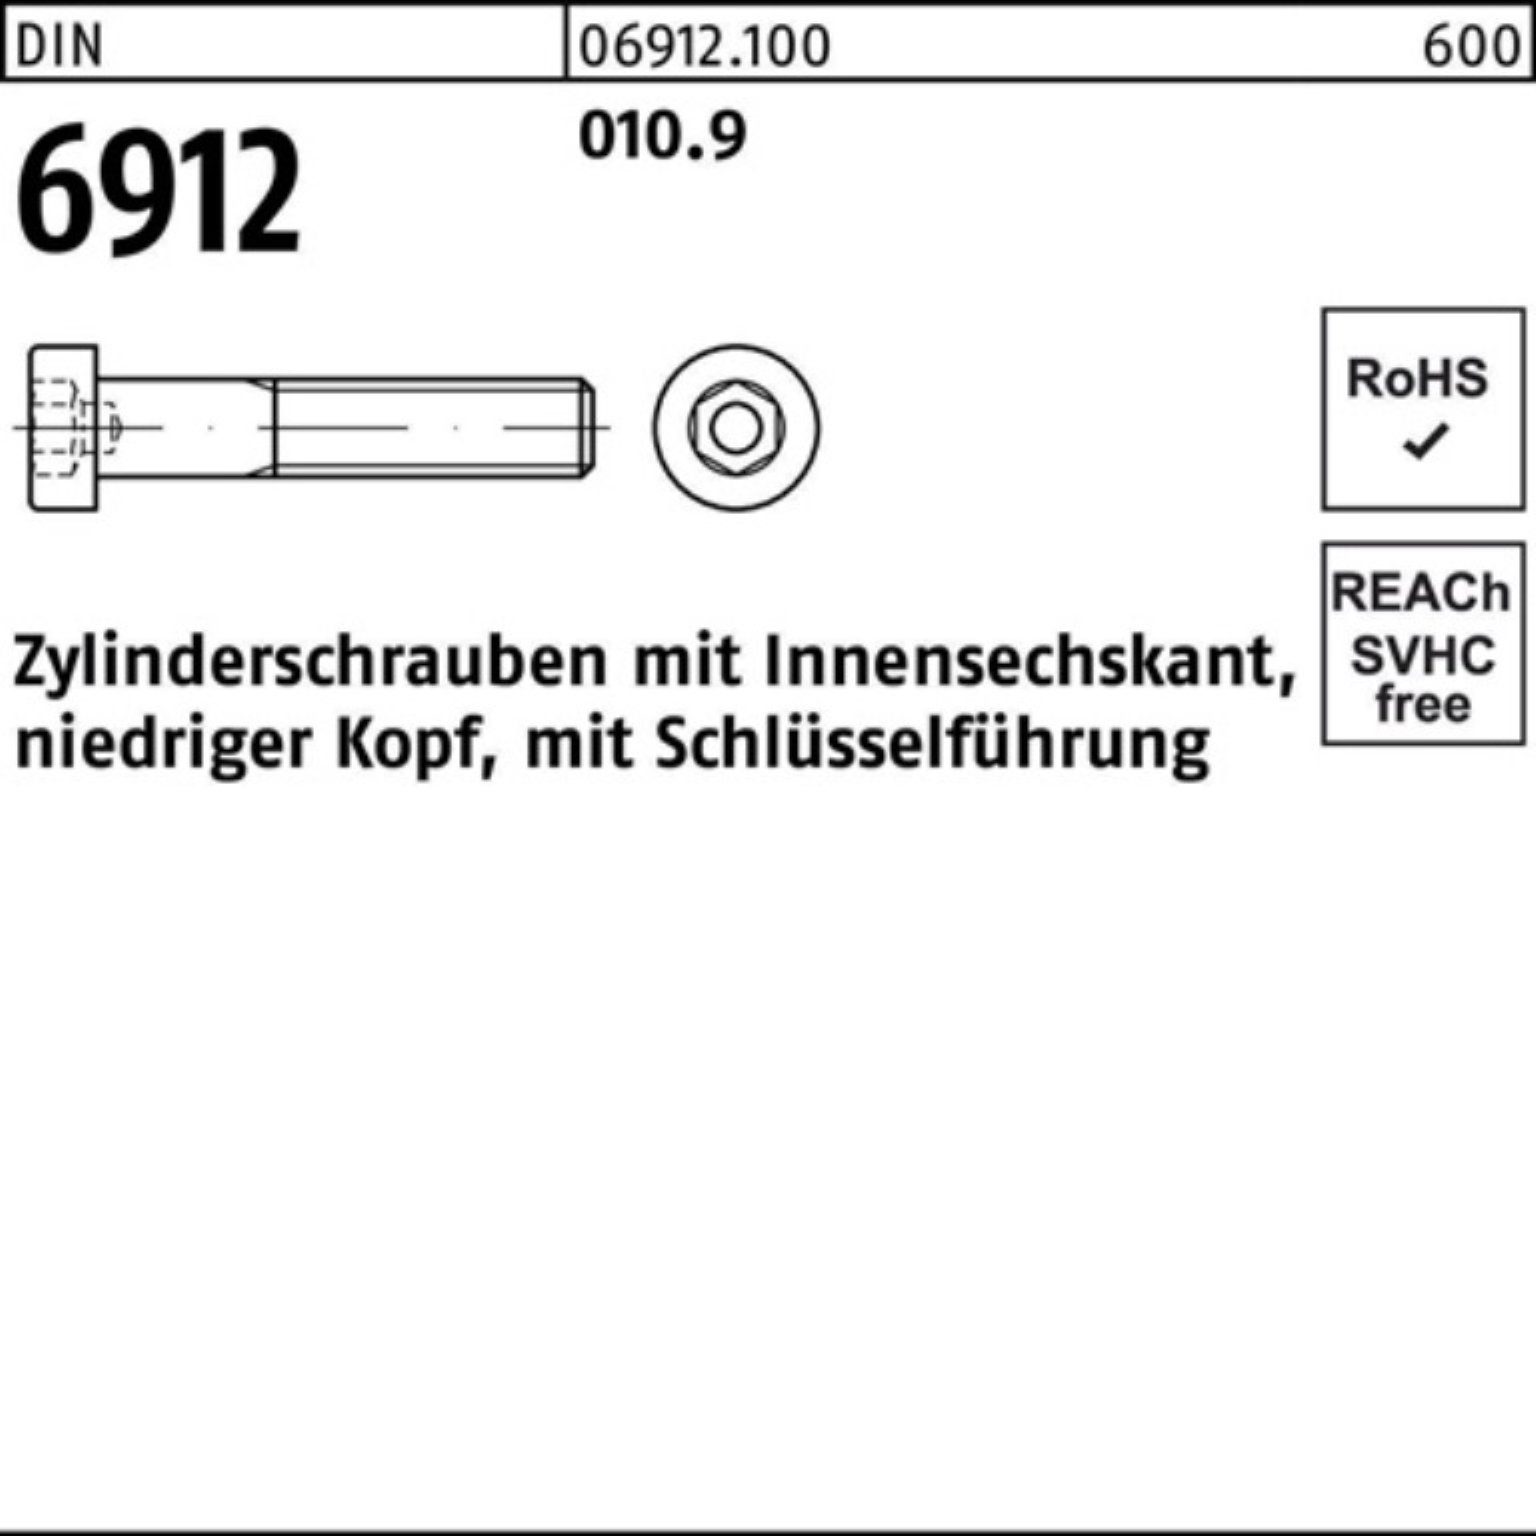 Reyher Zylinderschraube 200er Pack Zylinderschraube Innen-6kt 6912 16 200 M10x DIN Stüc 010.9